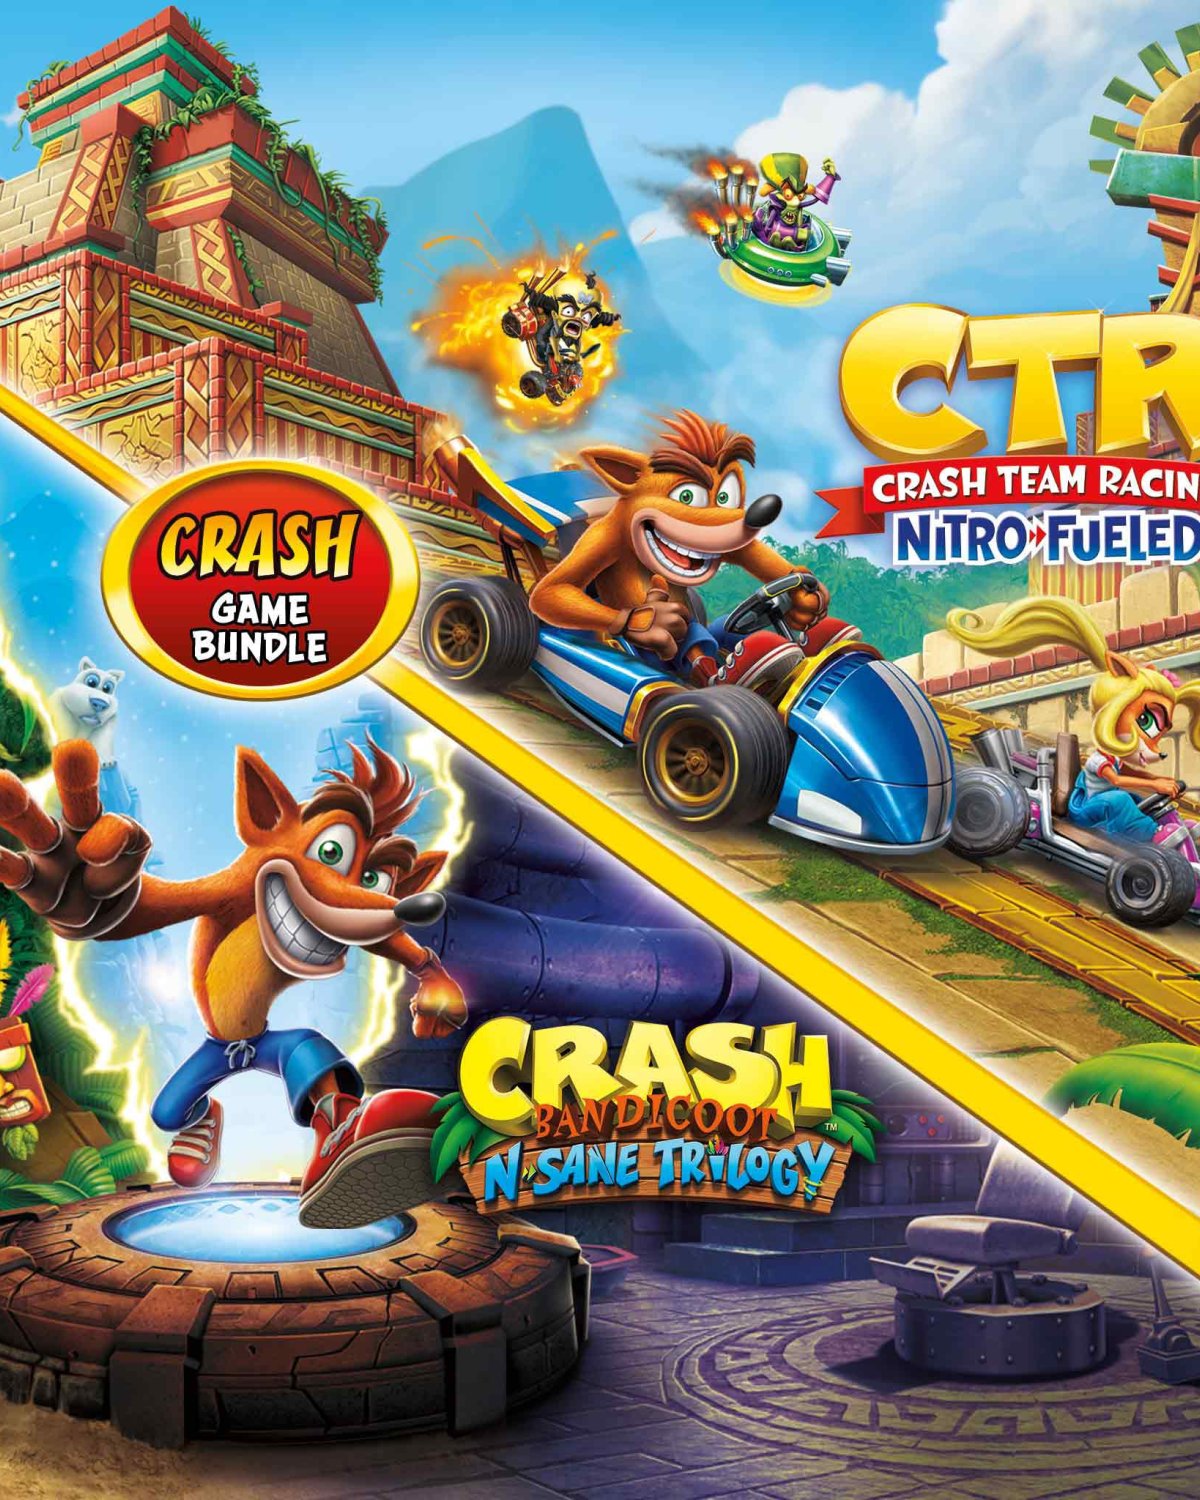 Crash Bandicoot + Nitro-Fueled